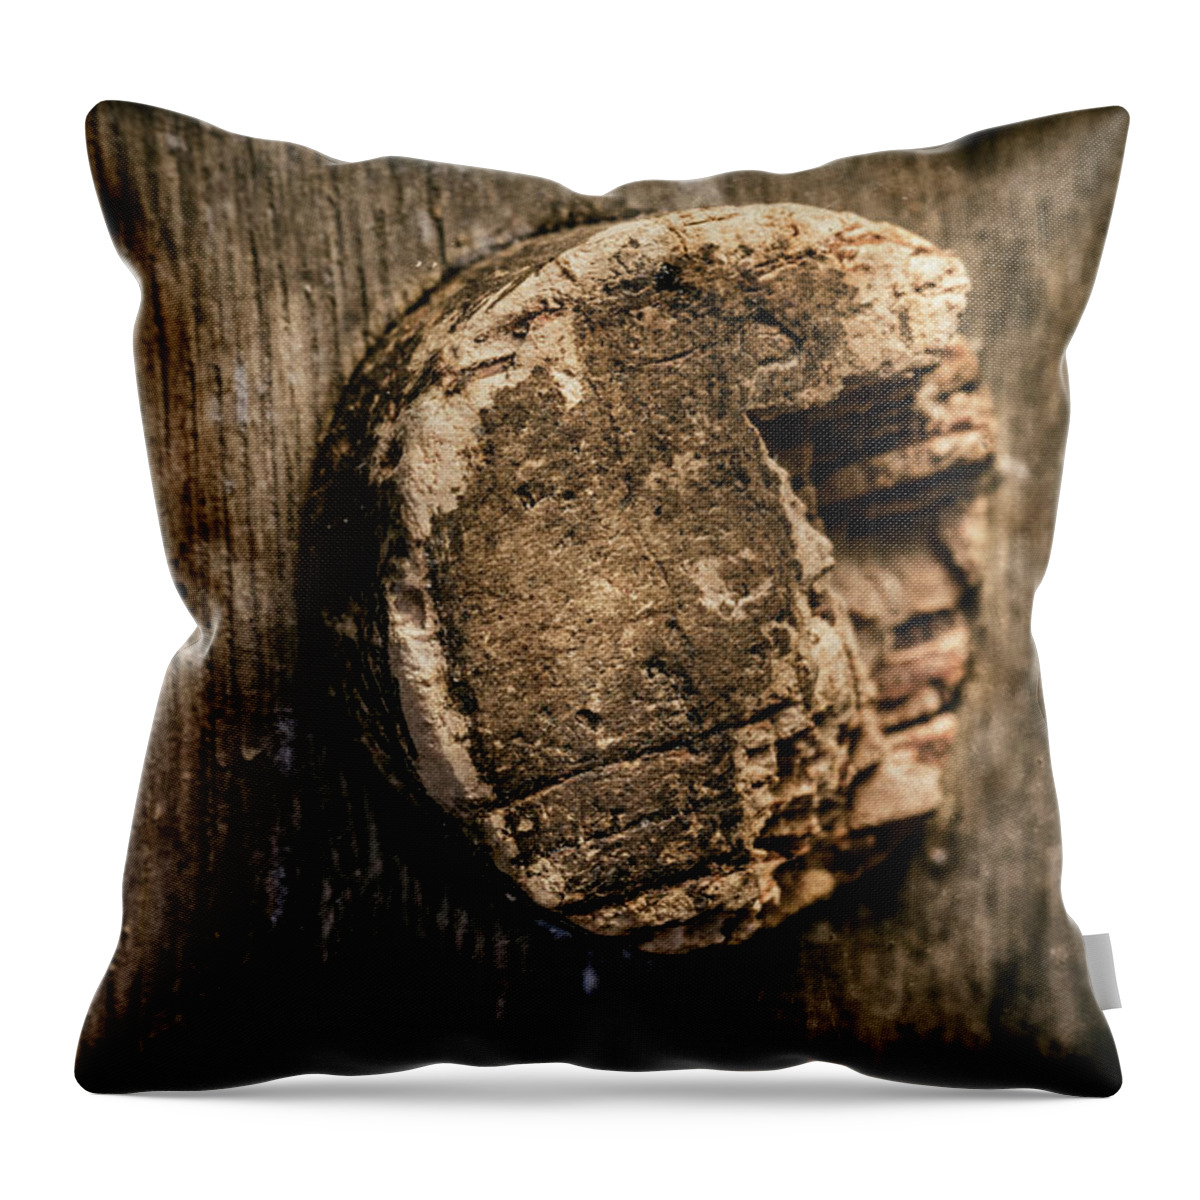 Keg Throw Pillow featuring the photograph Antique Wine Barrel Cork by Tom Mc Nemar